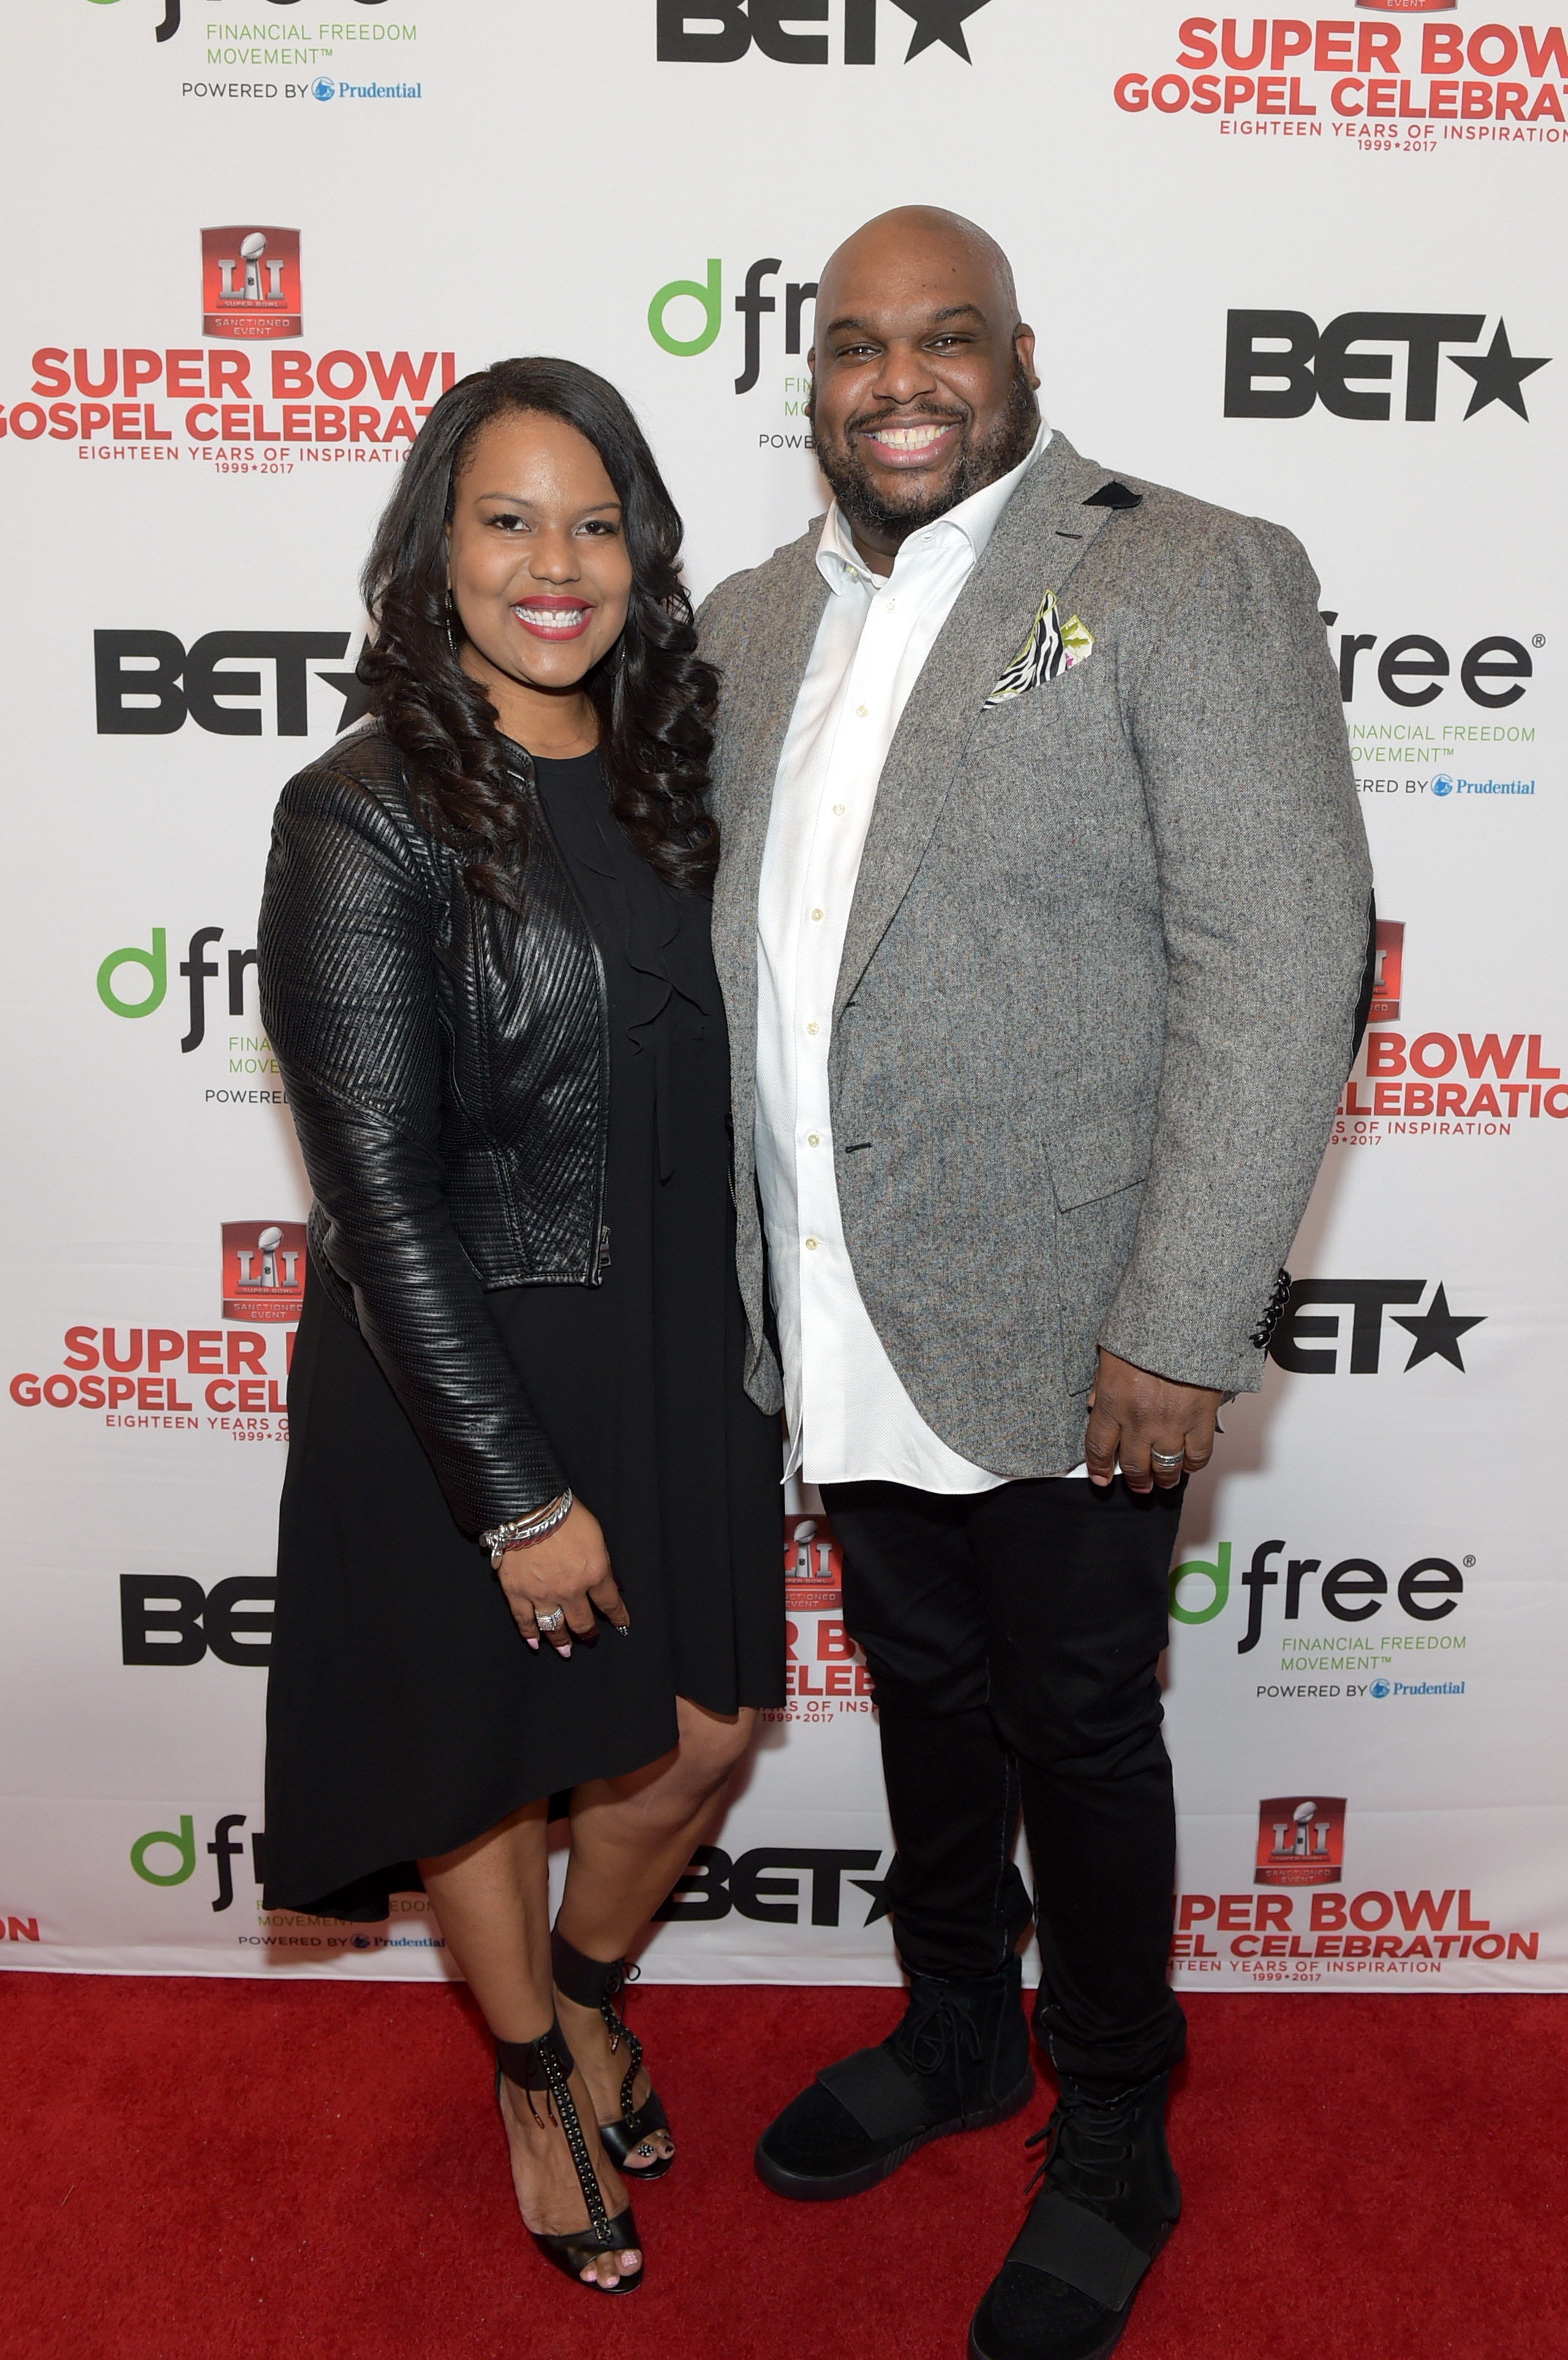 BET Presents Super Bowl Gospel Celebration - Red Carpet